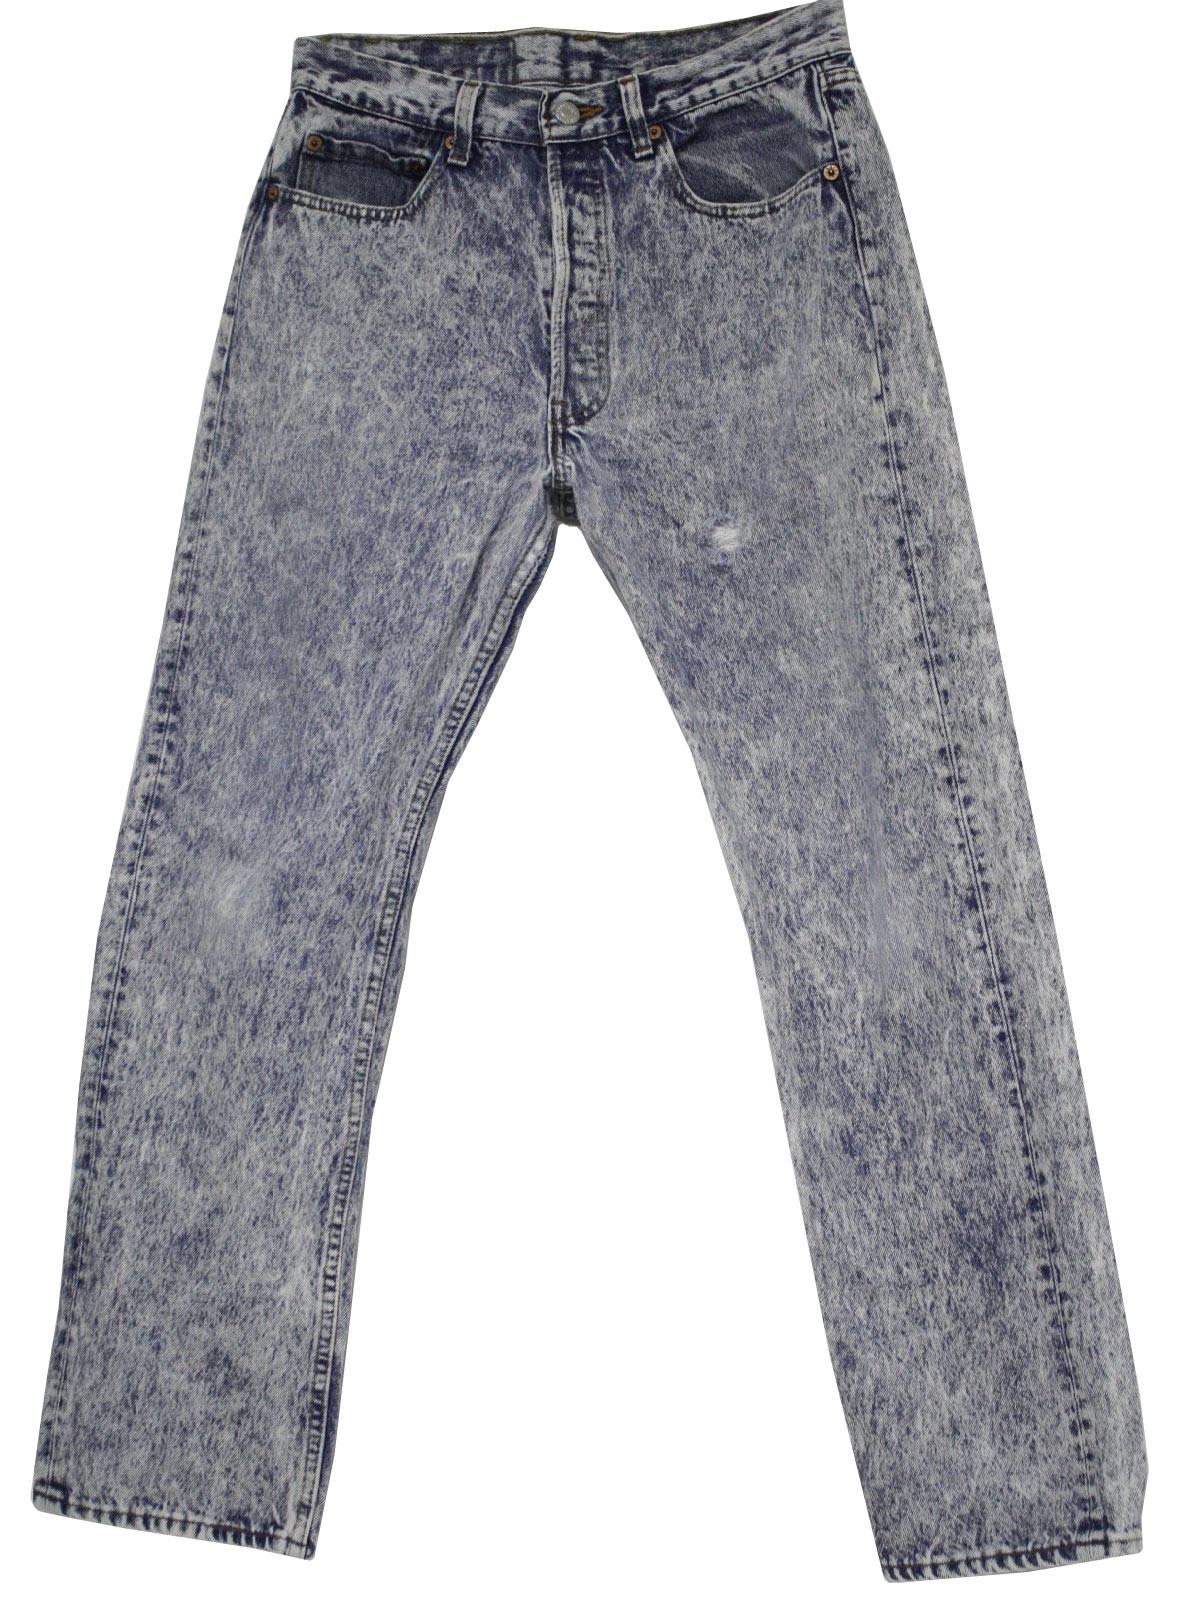 Retro Eighties Pants: 80s -Levis- Mens light blue acid wash cotton ...